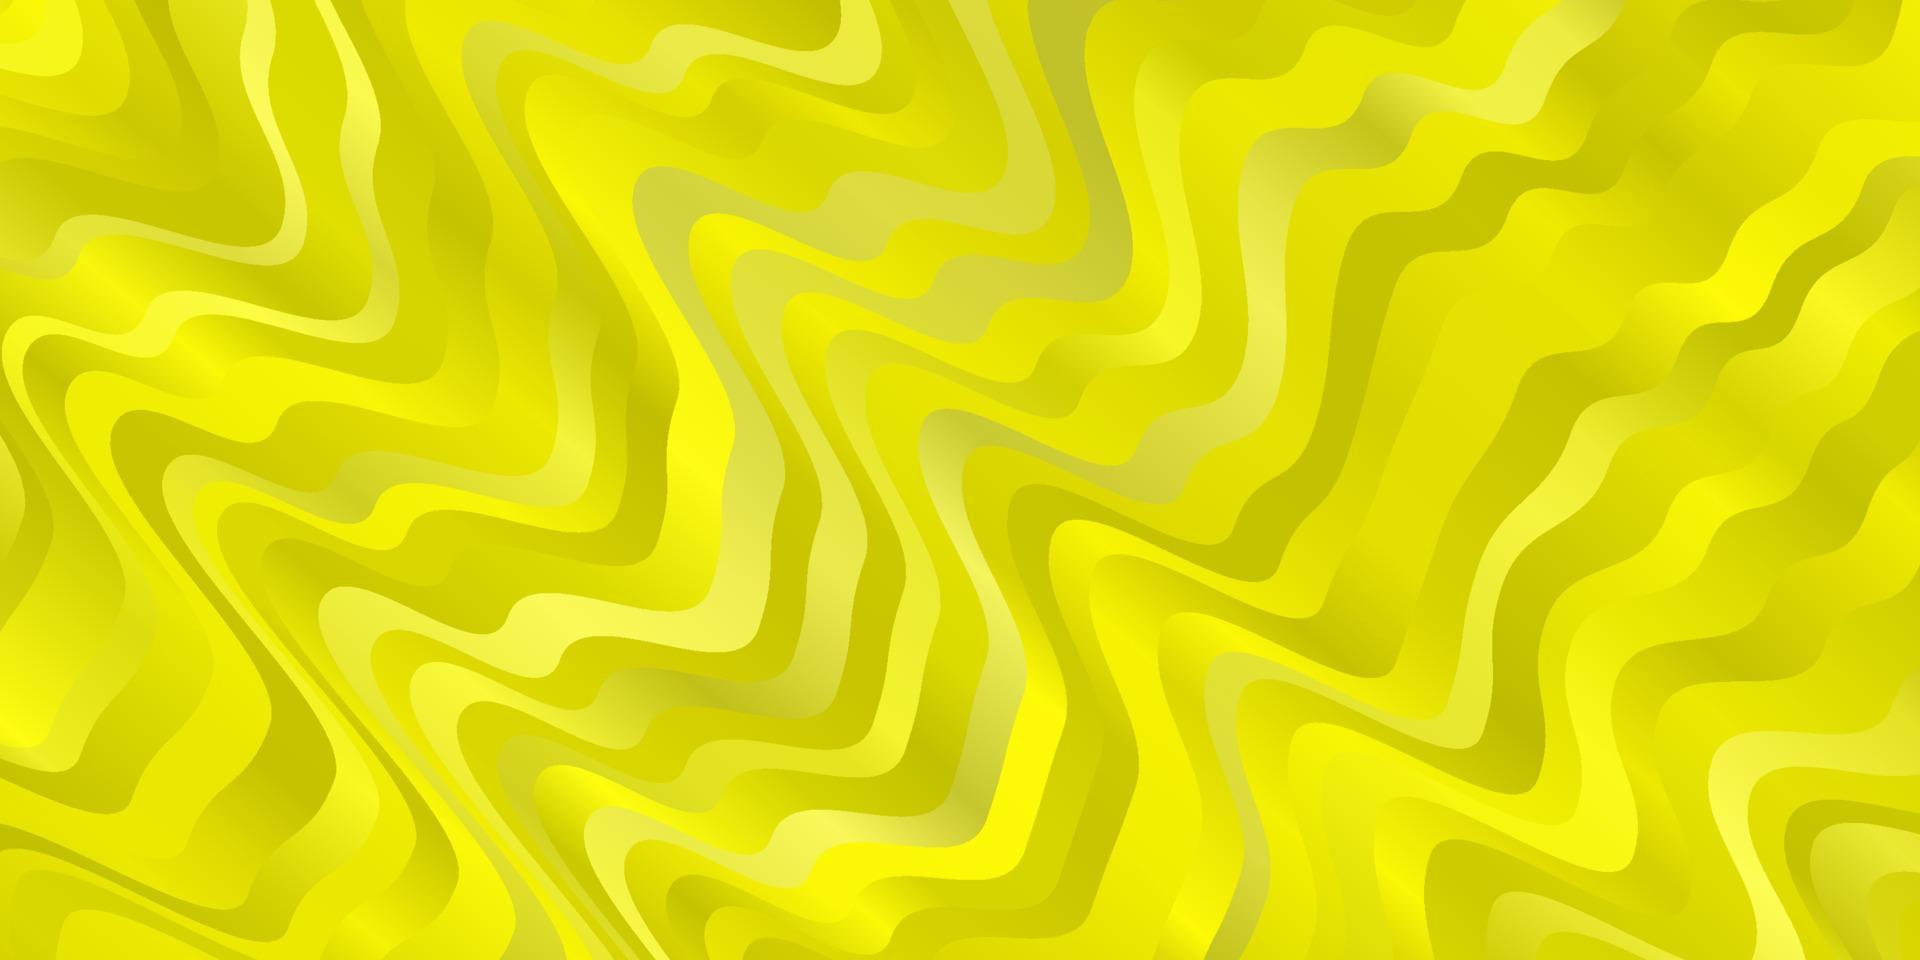 toile de fond de vecteur jaune clair avec des courbes.